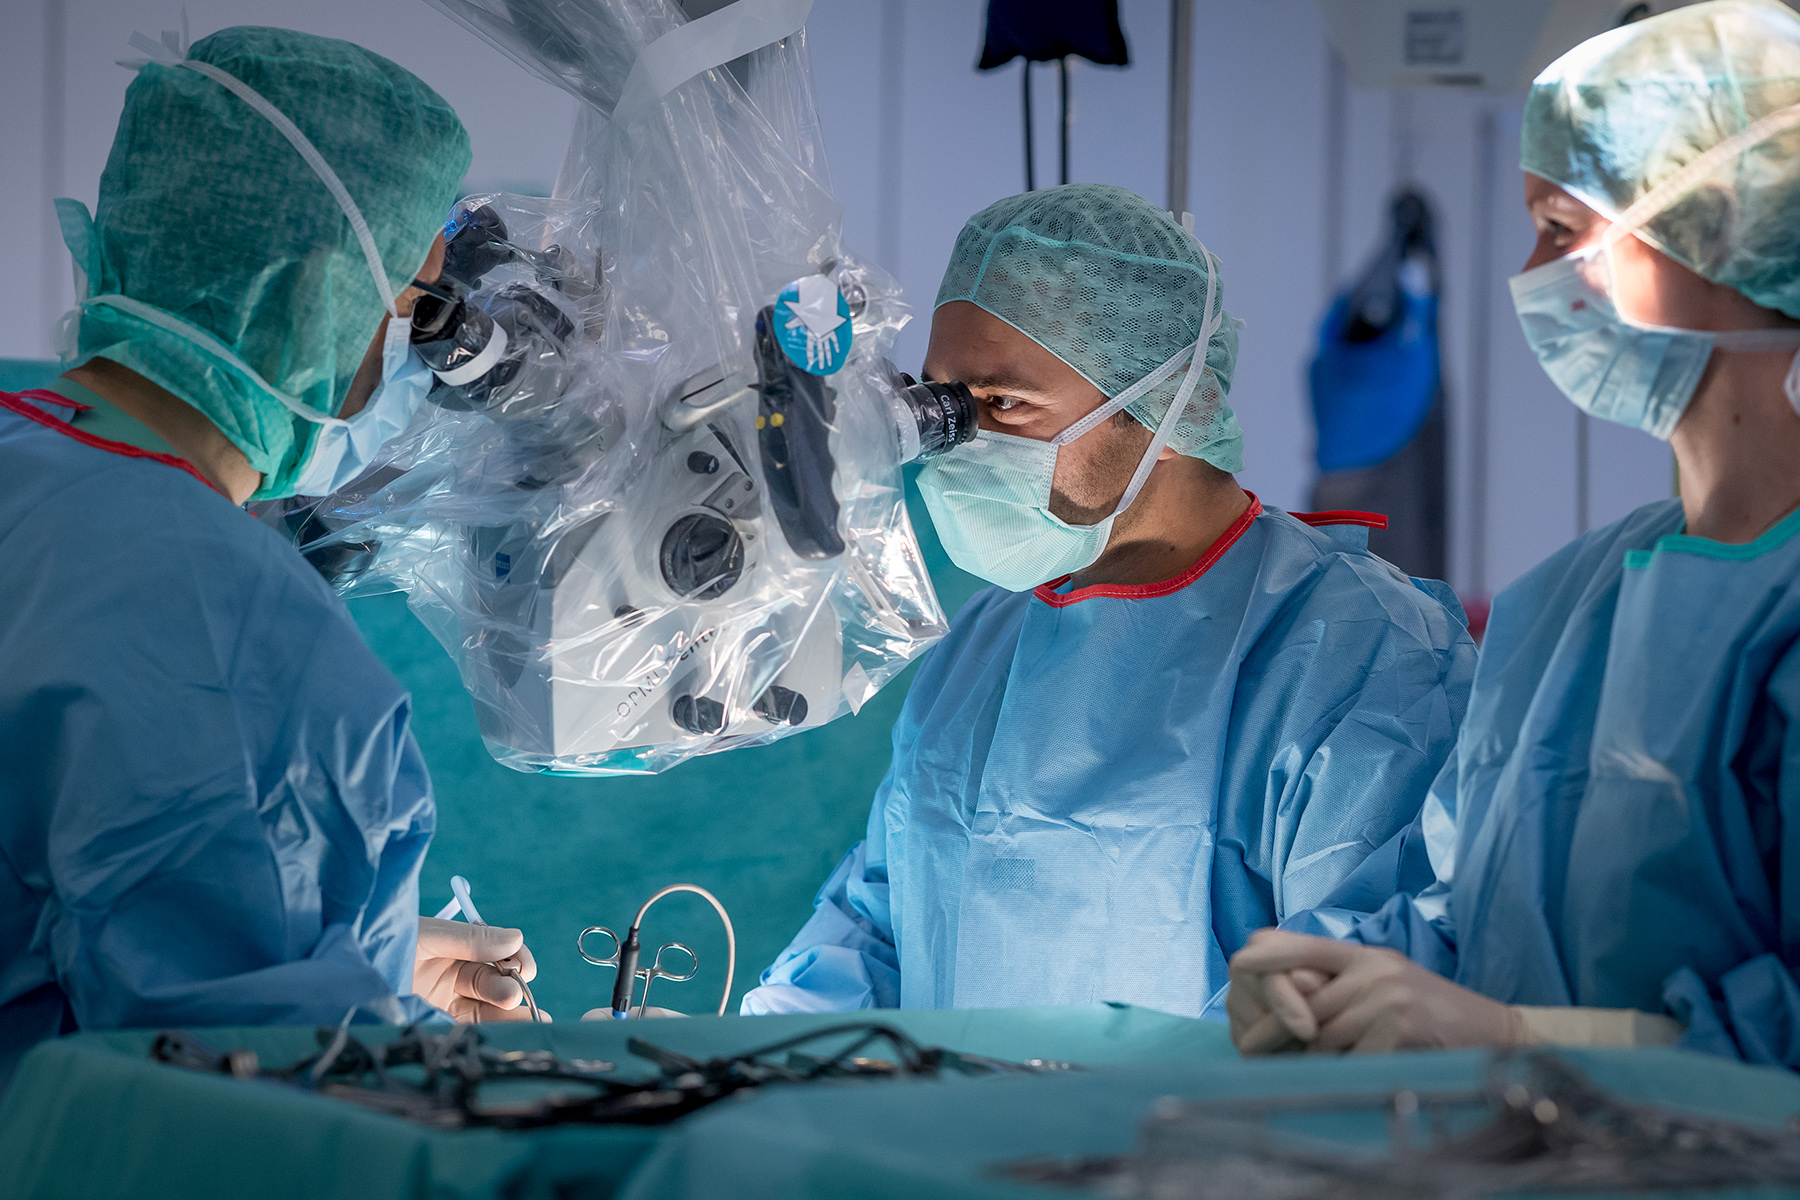 neurochirurgie-chirurgie-des-gehirn-und-nervensystems-neurochirurge